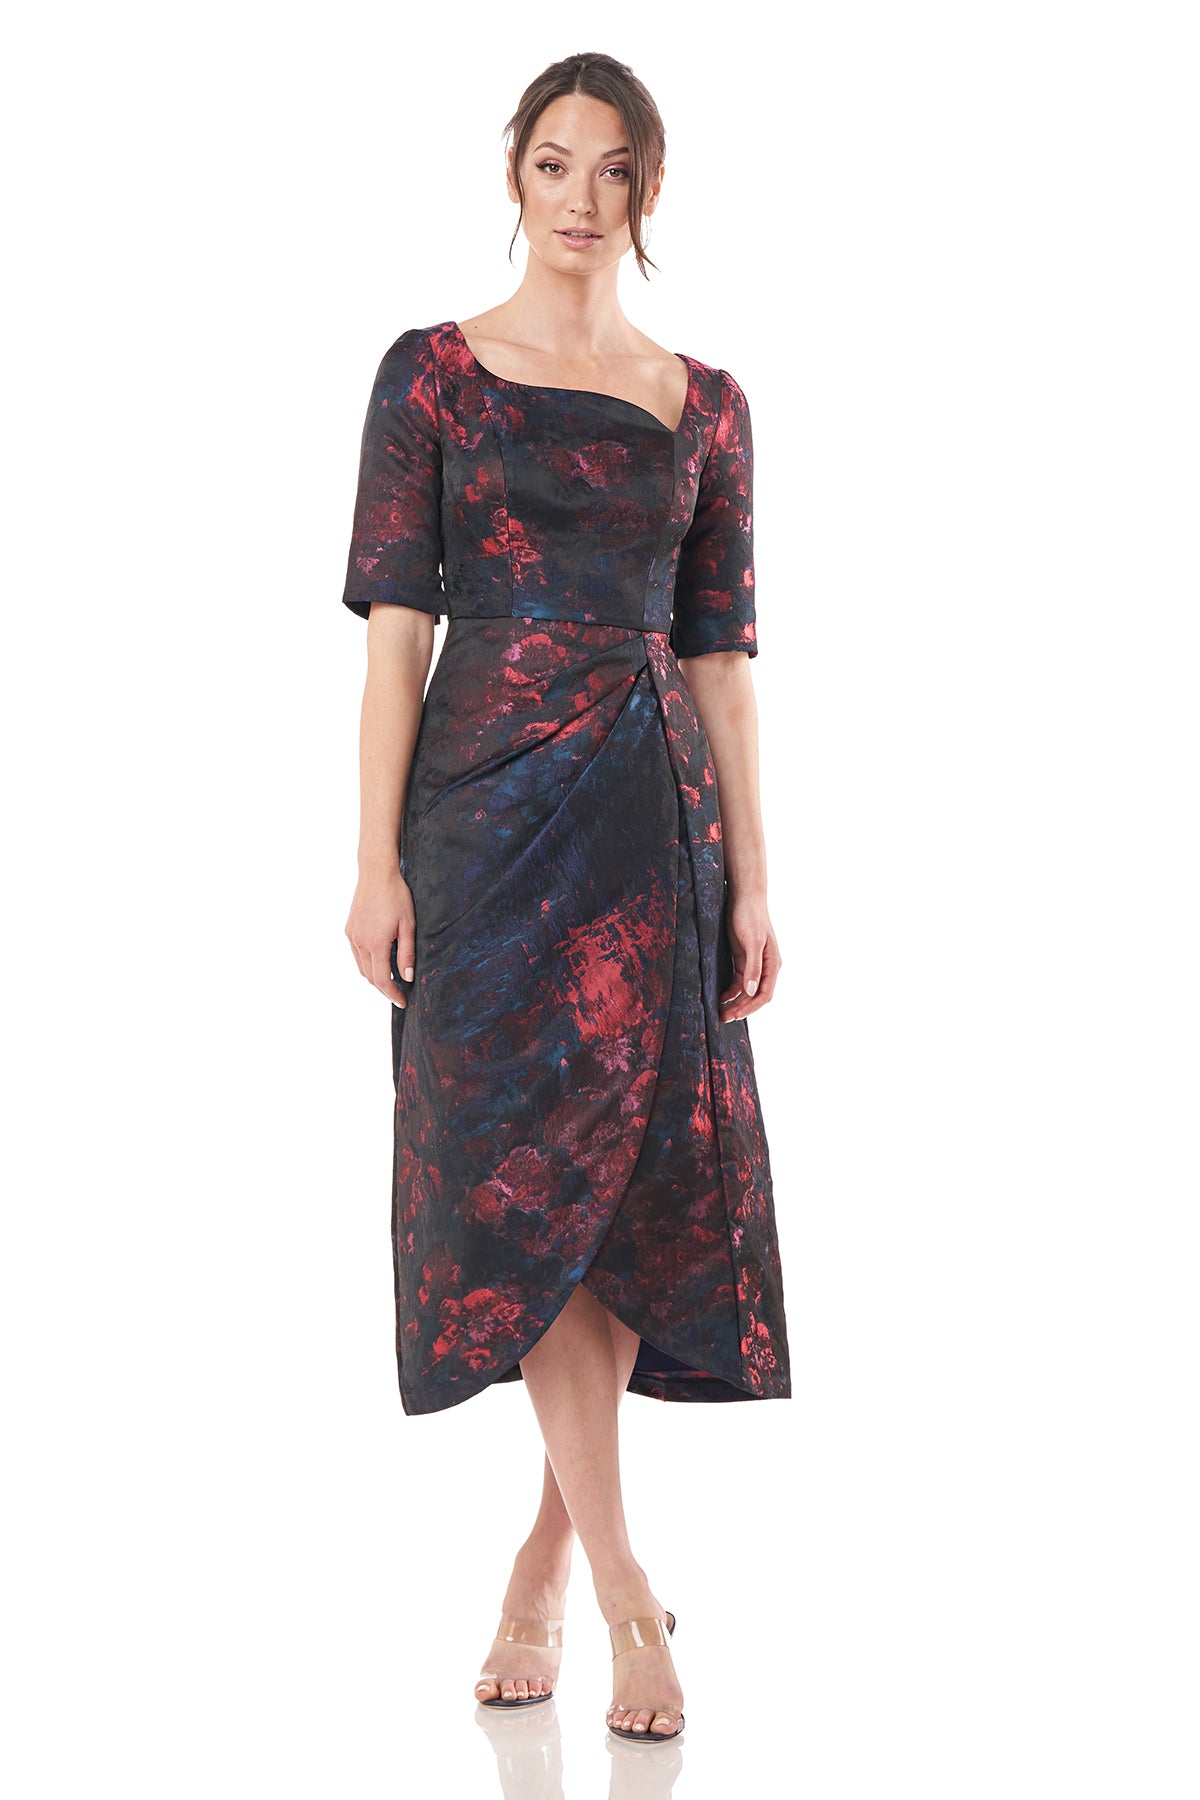 Tallulah T-Length Dress – Kay Unger